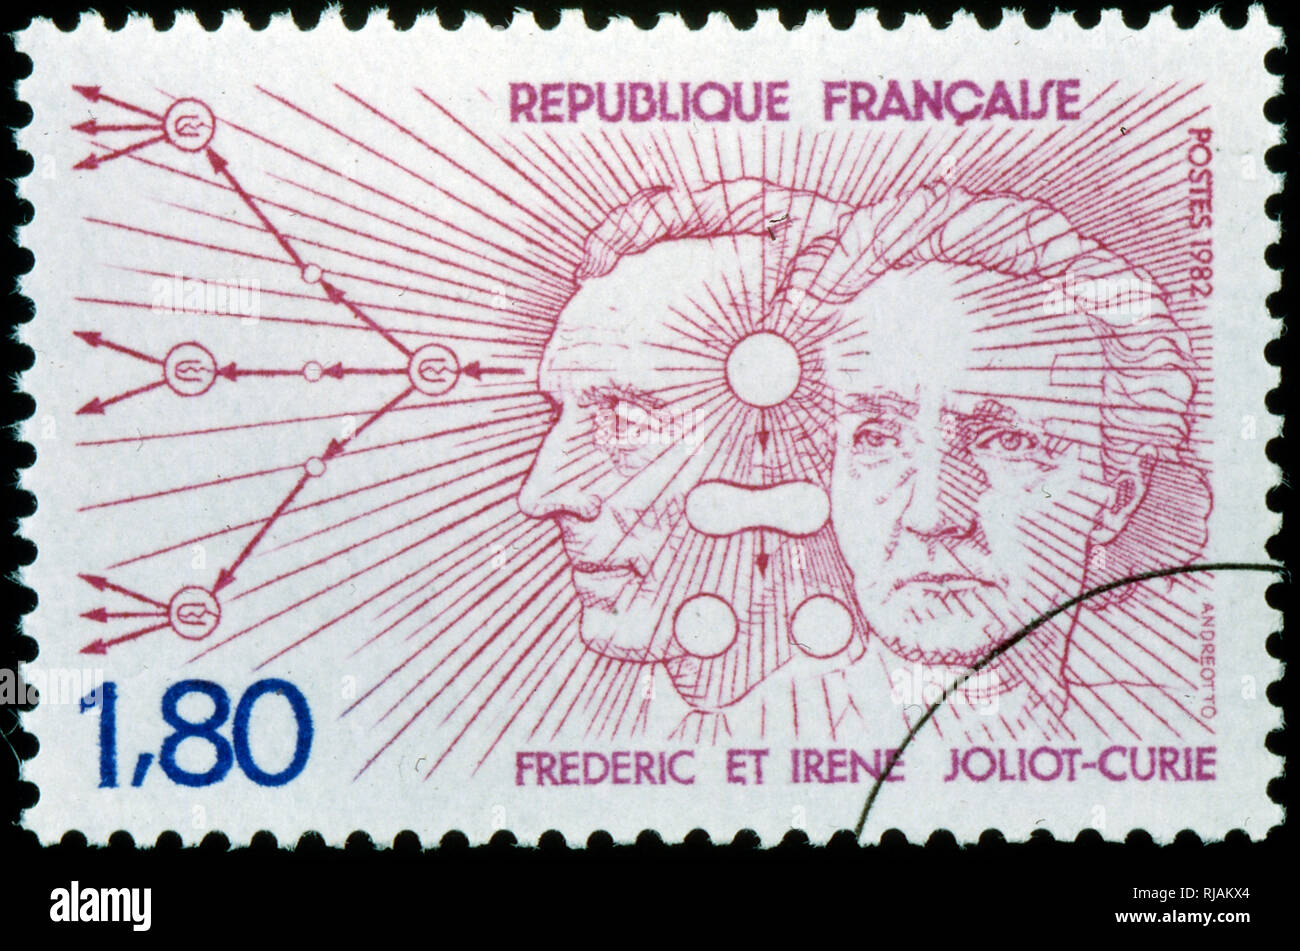 Französische Briefmarke feiert Irene Joliot-Curie und Frederic Joliot-Curie. Sie waren der Nobelpreis für Physik 1935 für die Entdeckung der künstlichen Radioaktivität verliehen. Stockfoto